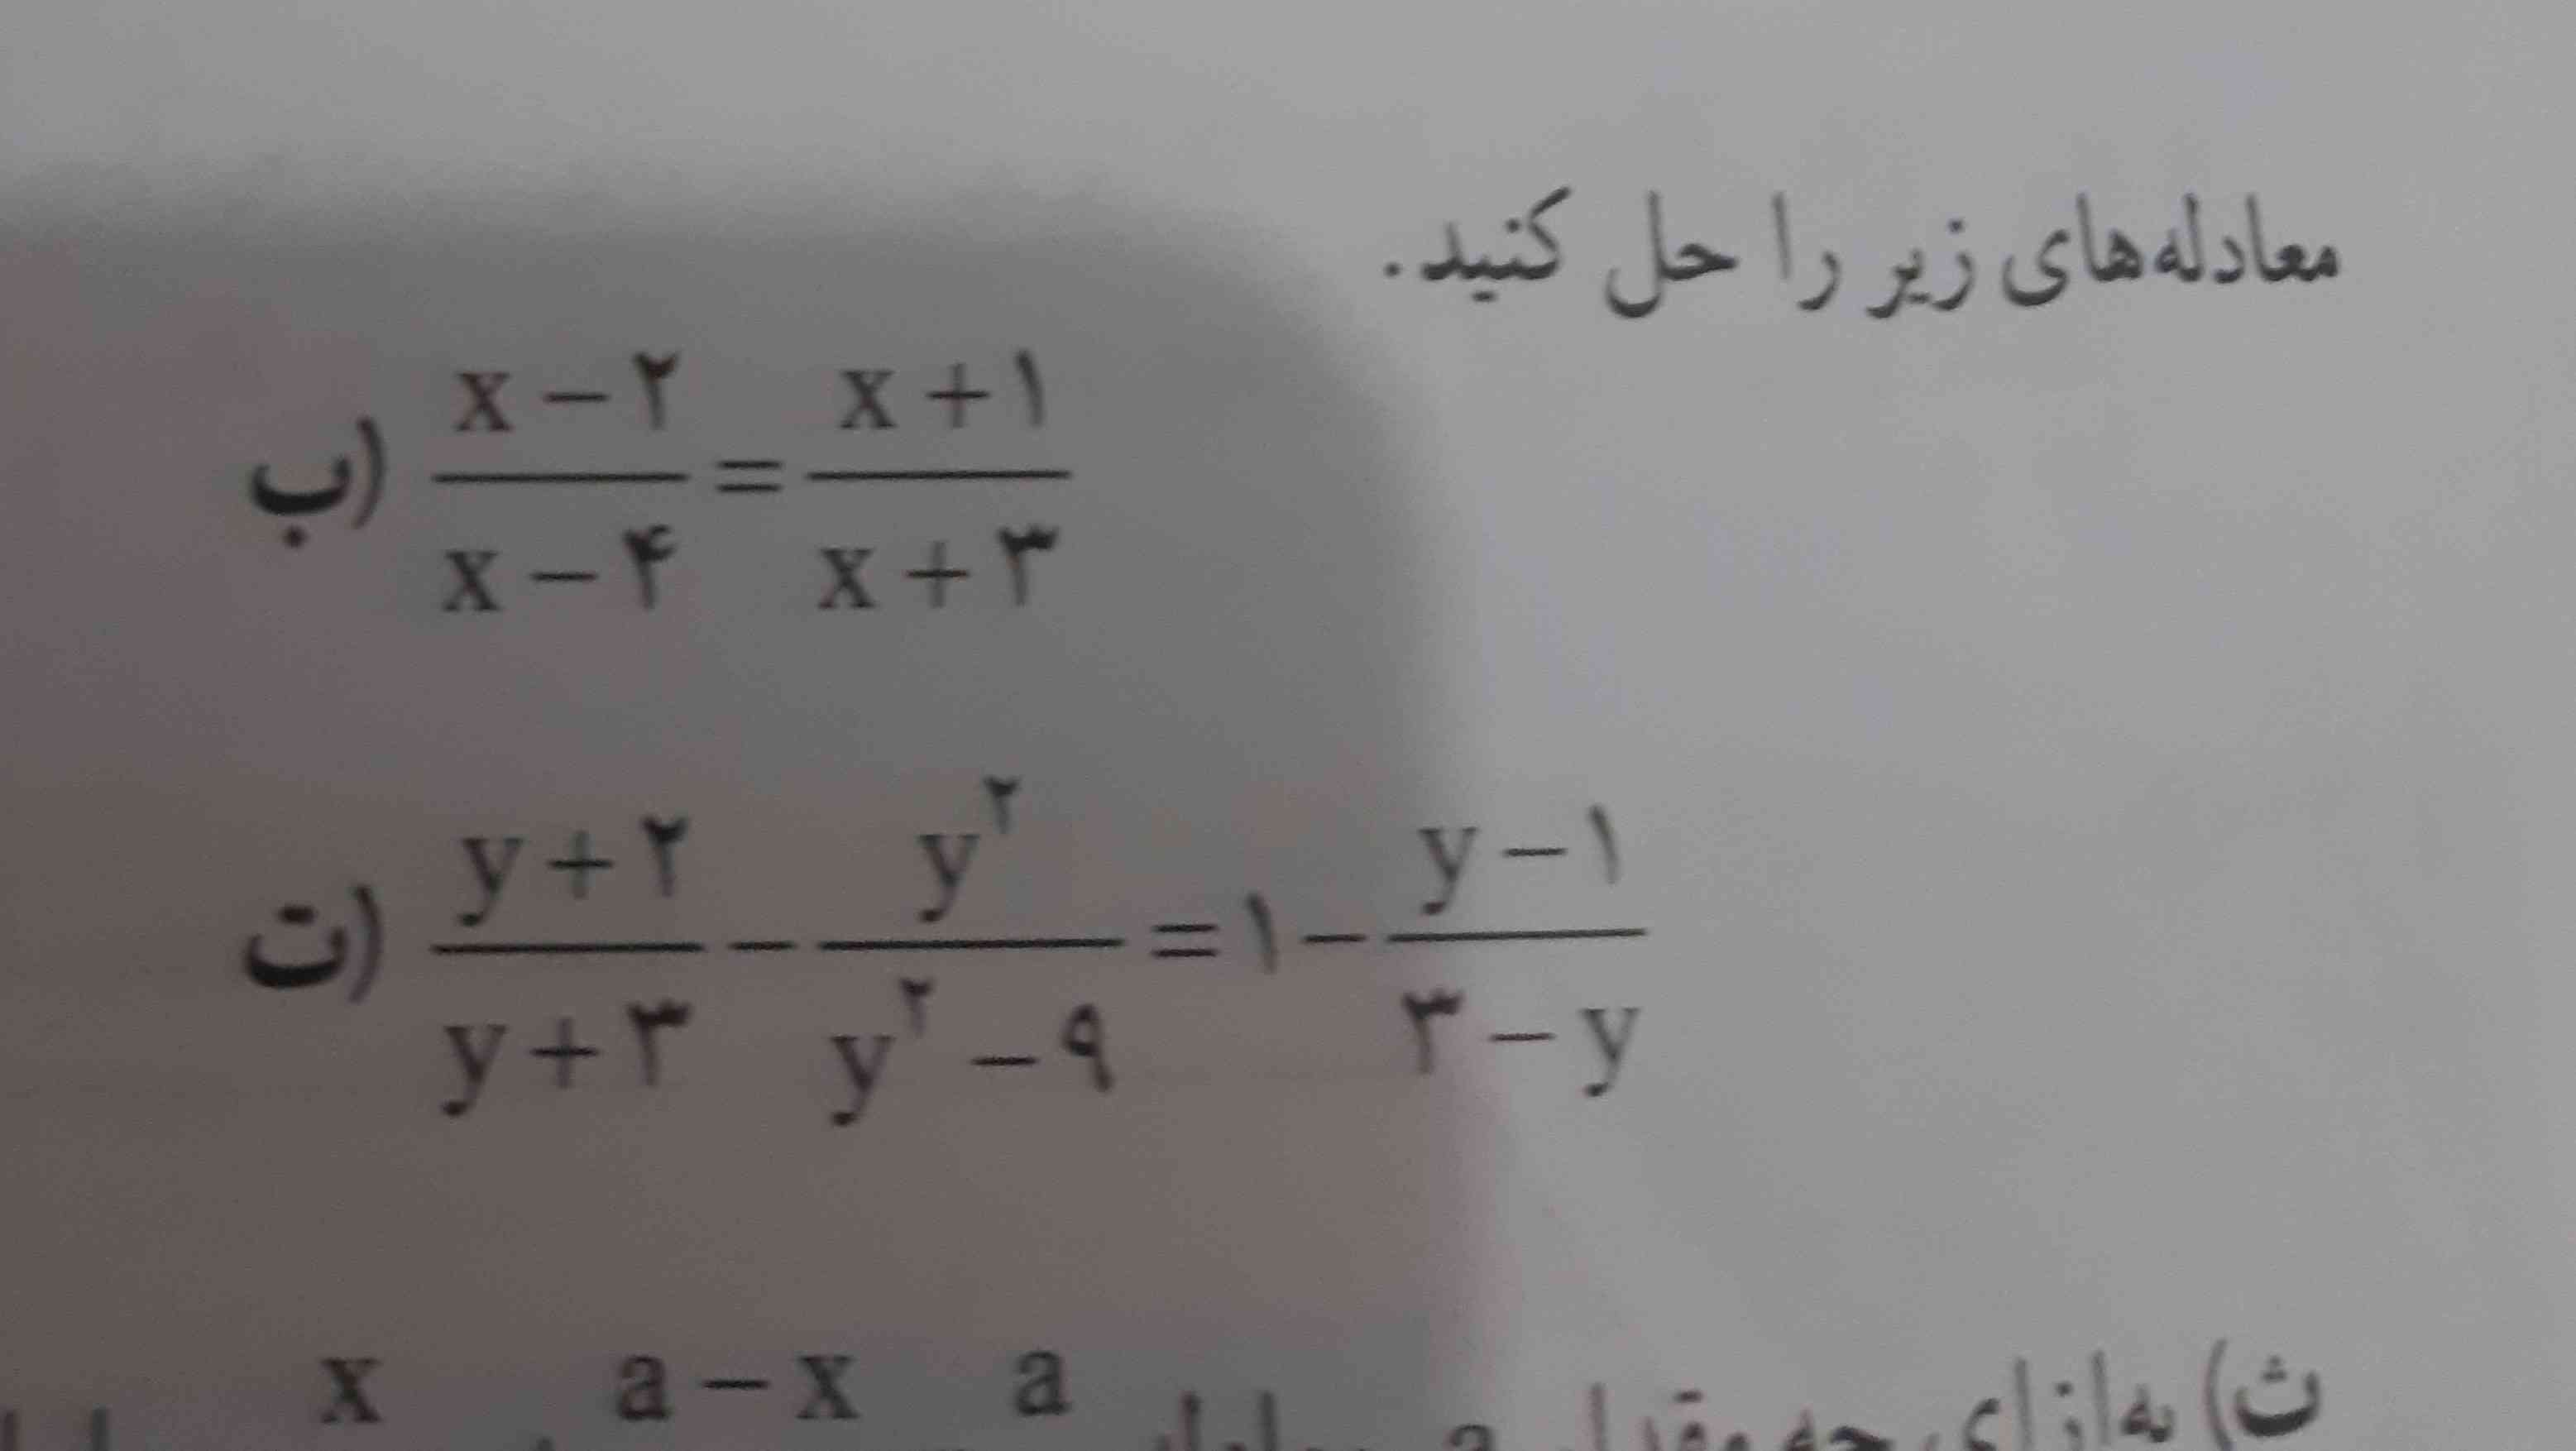 
معادله های زیر را حل کنید
